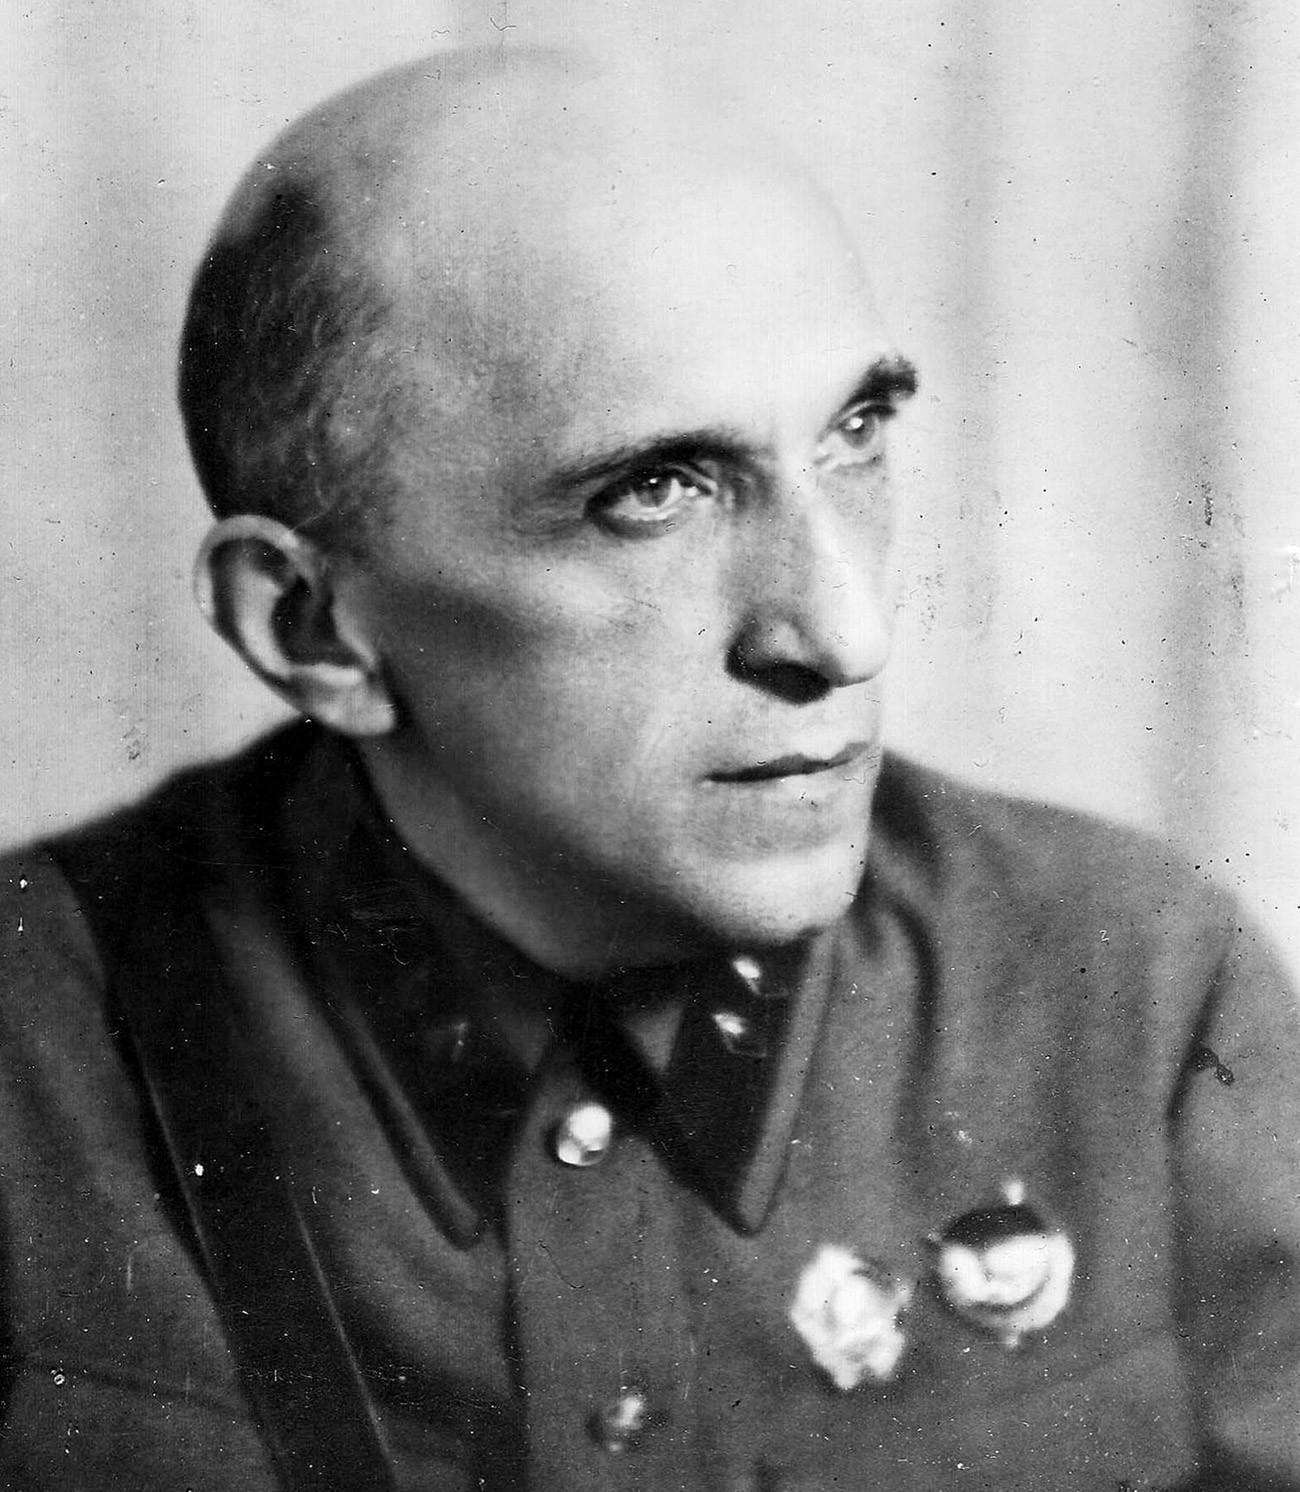 ヤーコフ・セレブリャンスキー、1941年の写真